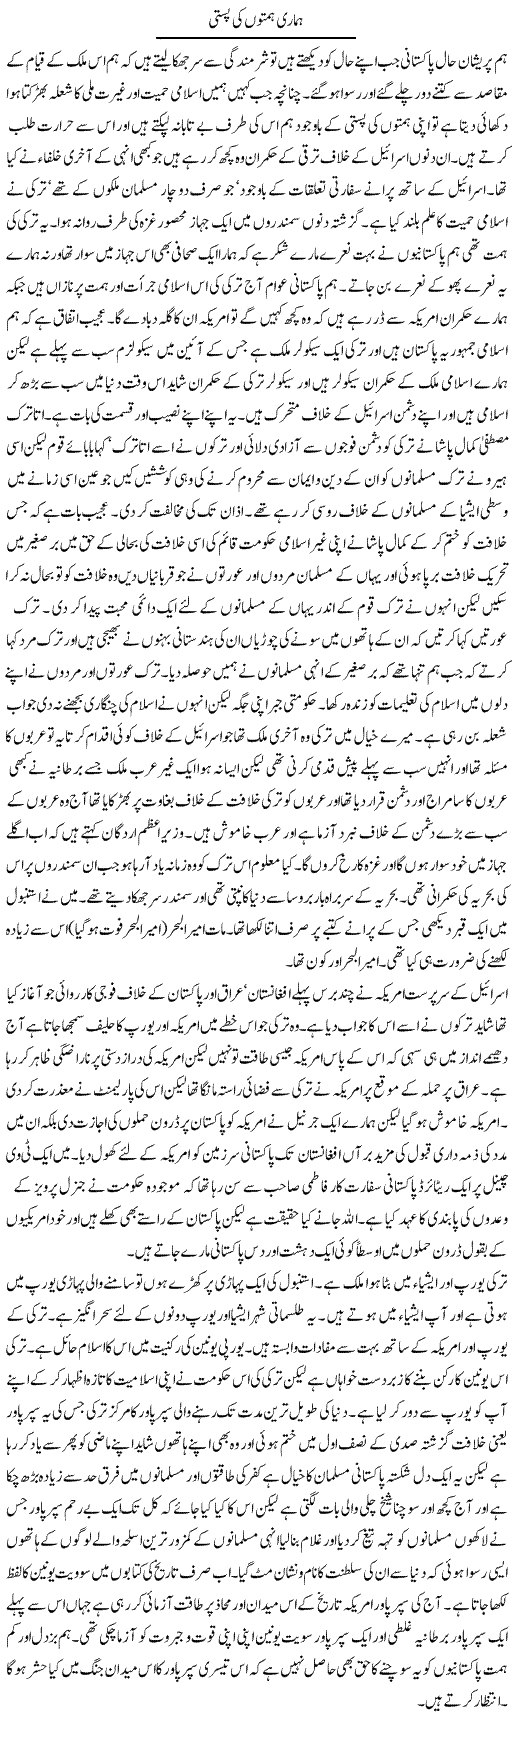 Himaat Express Column Abdul Qadir 13 June 2010